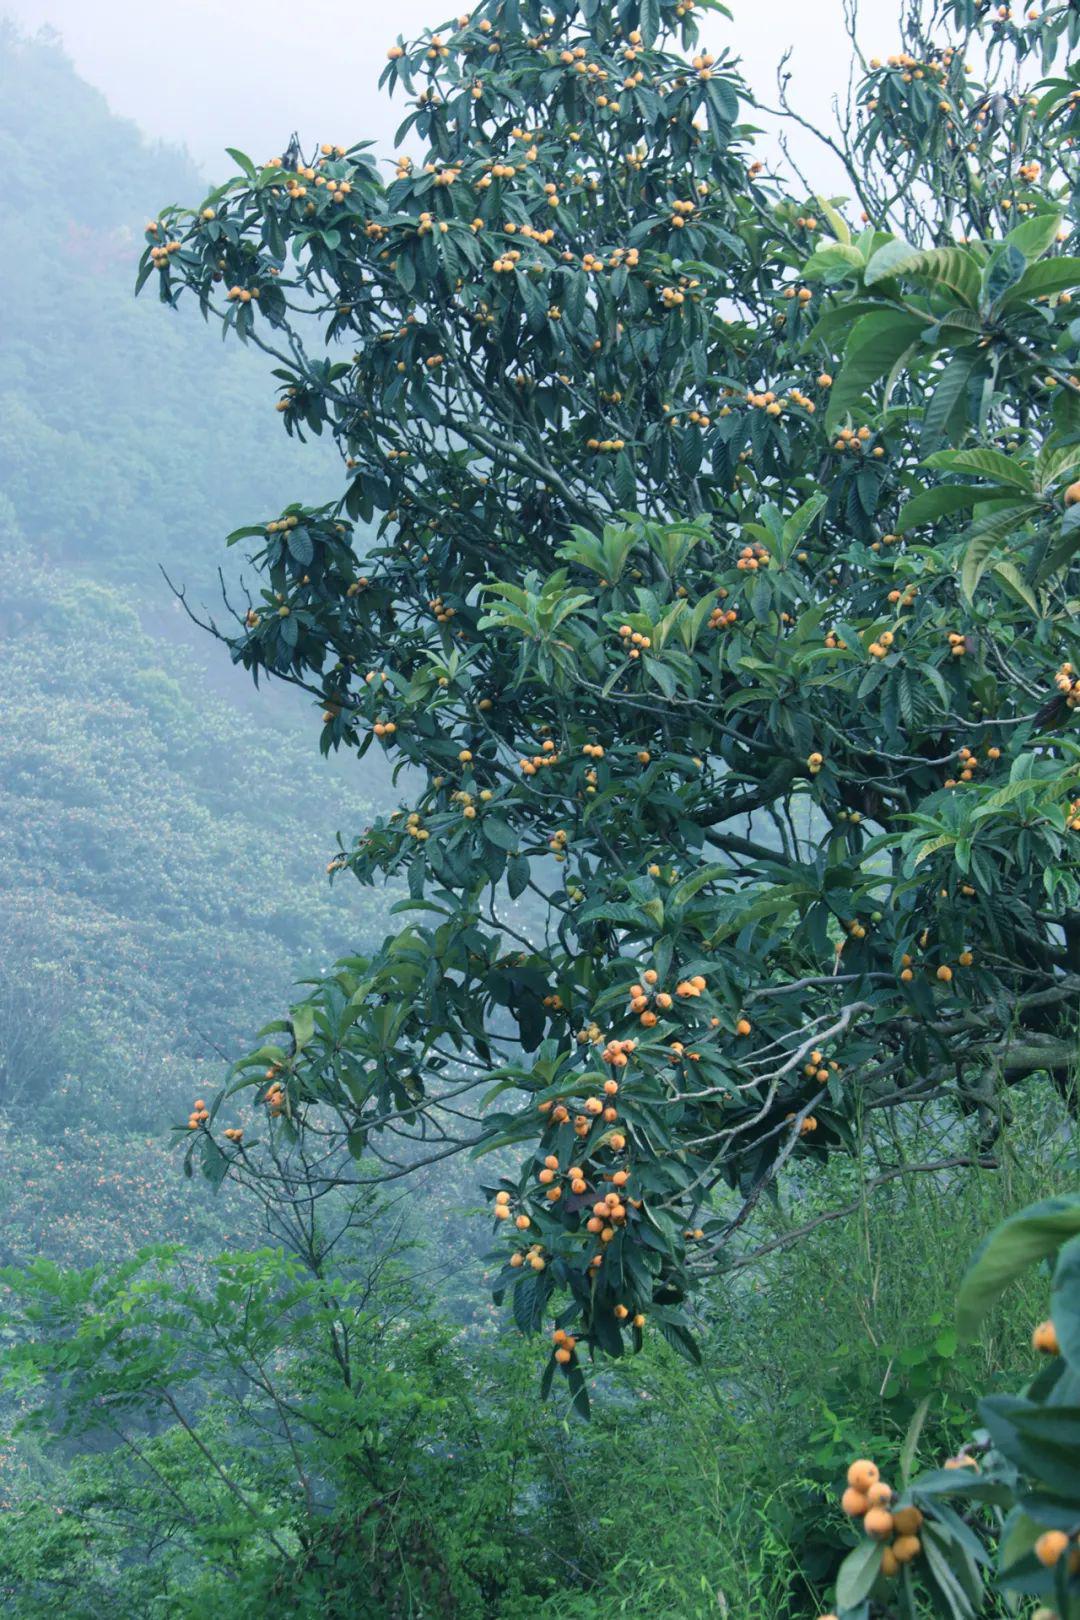 诚后村30多户果农种植的枇杷树,覆盖了整座山, 一棵棵枇杷树如老者般